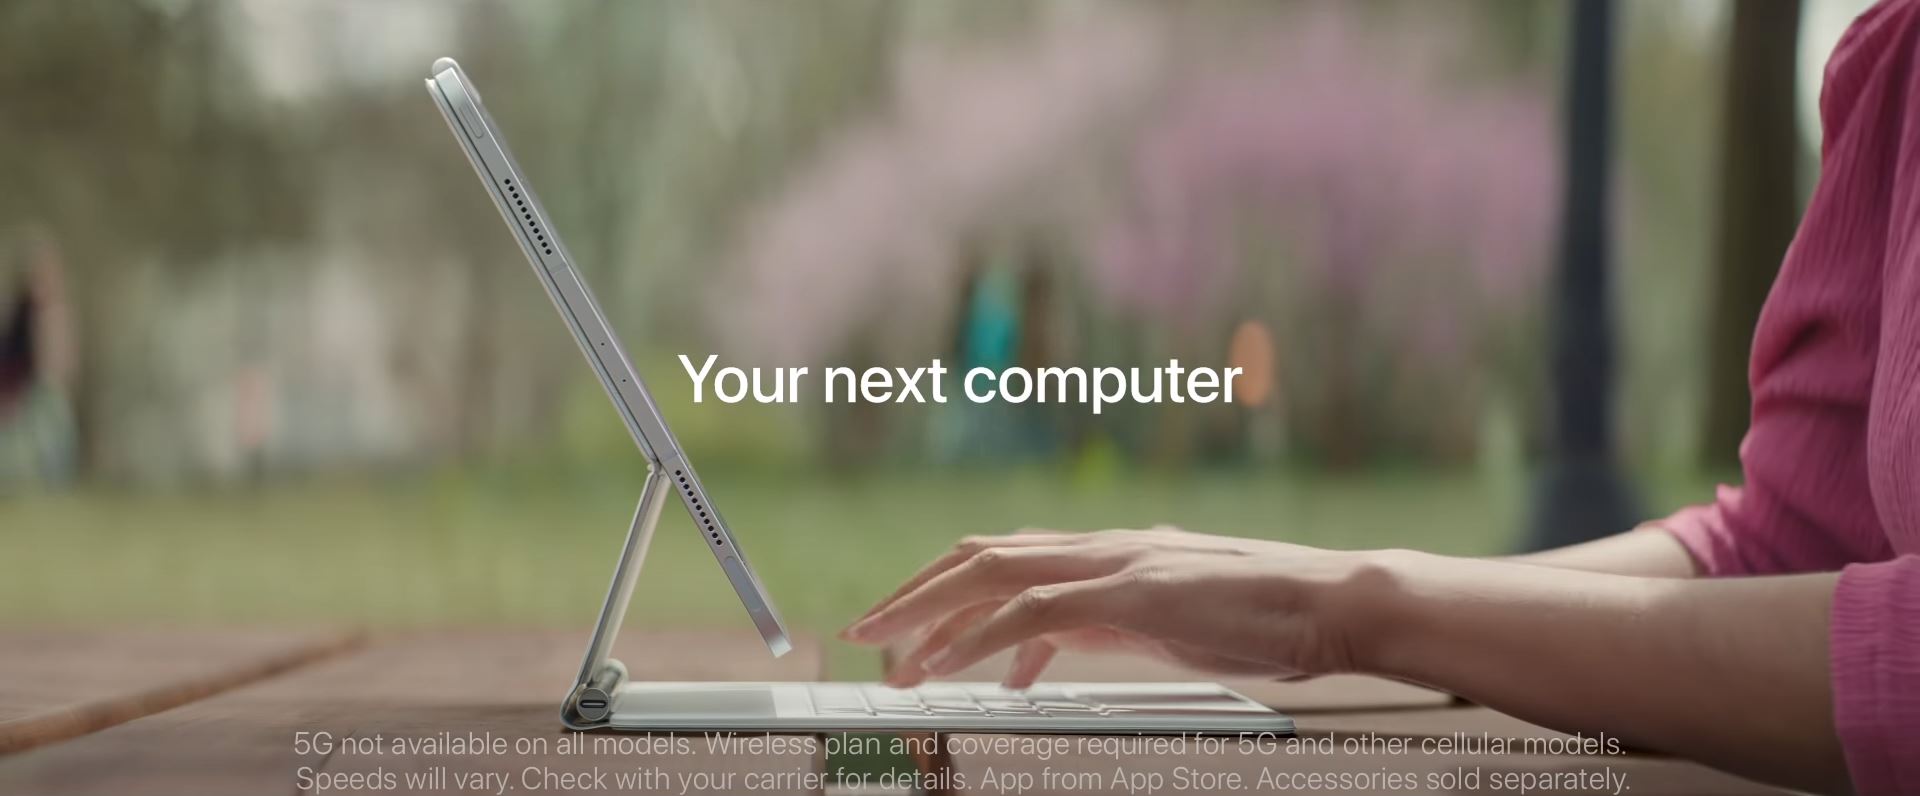 เผยโฆษณา iPad Pro ใหม่ ชูสโลแกน “คอมพิวเตอร์เครื่องใหม่ที่ไม่ใช่คอมพิวเตอร์”